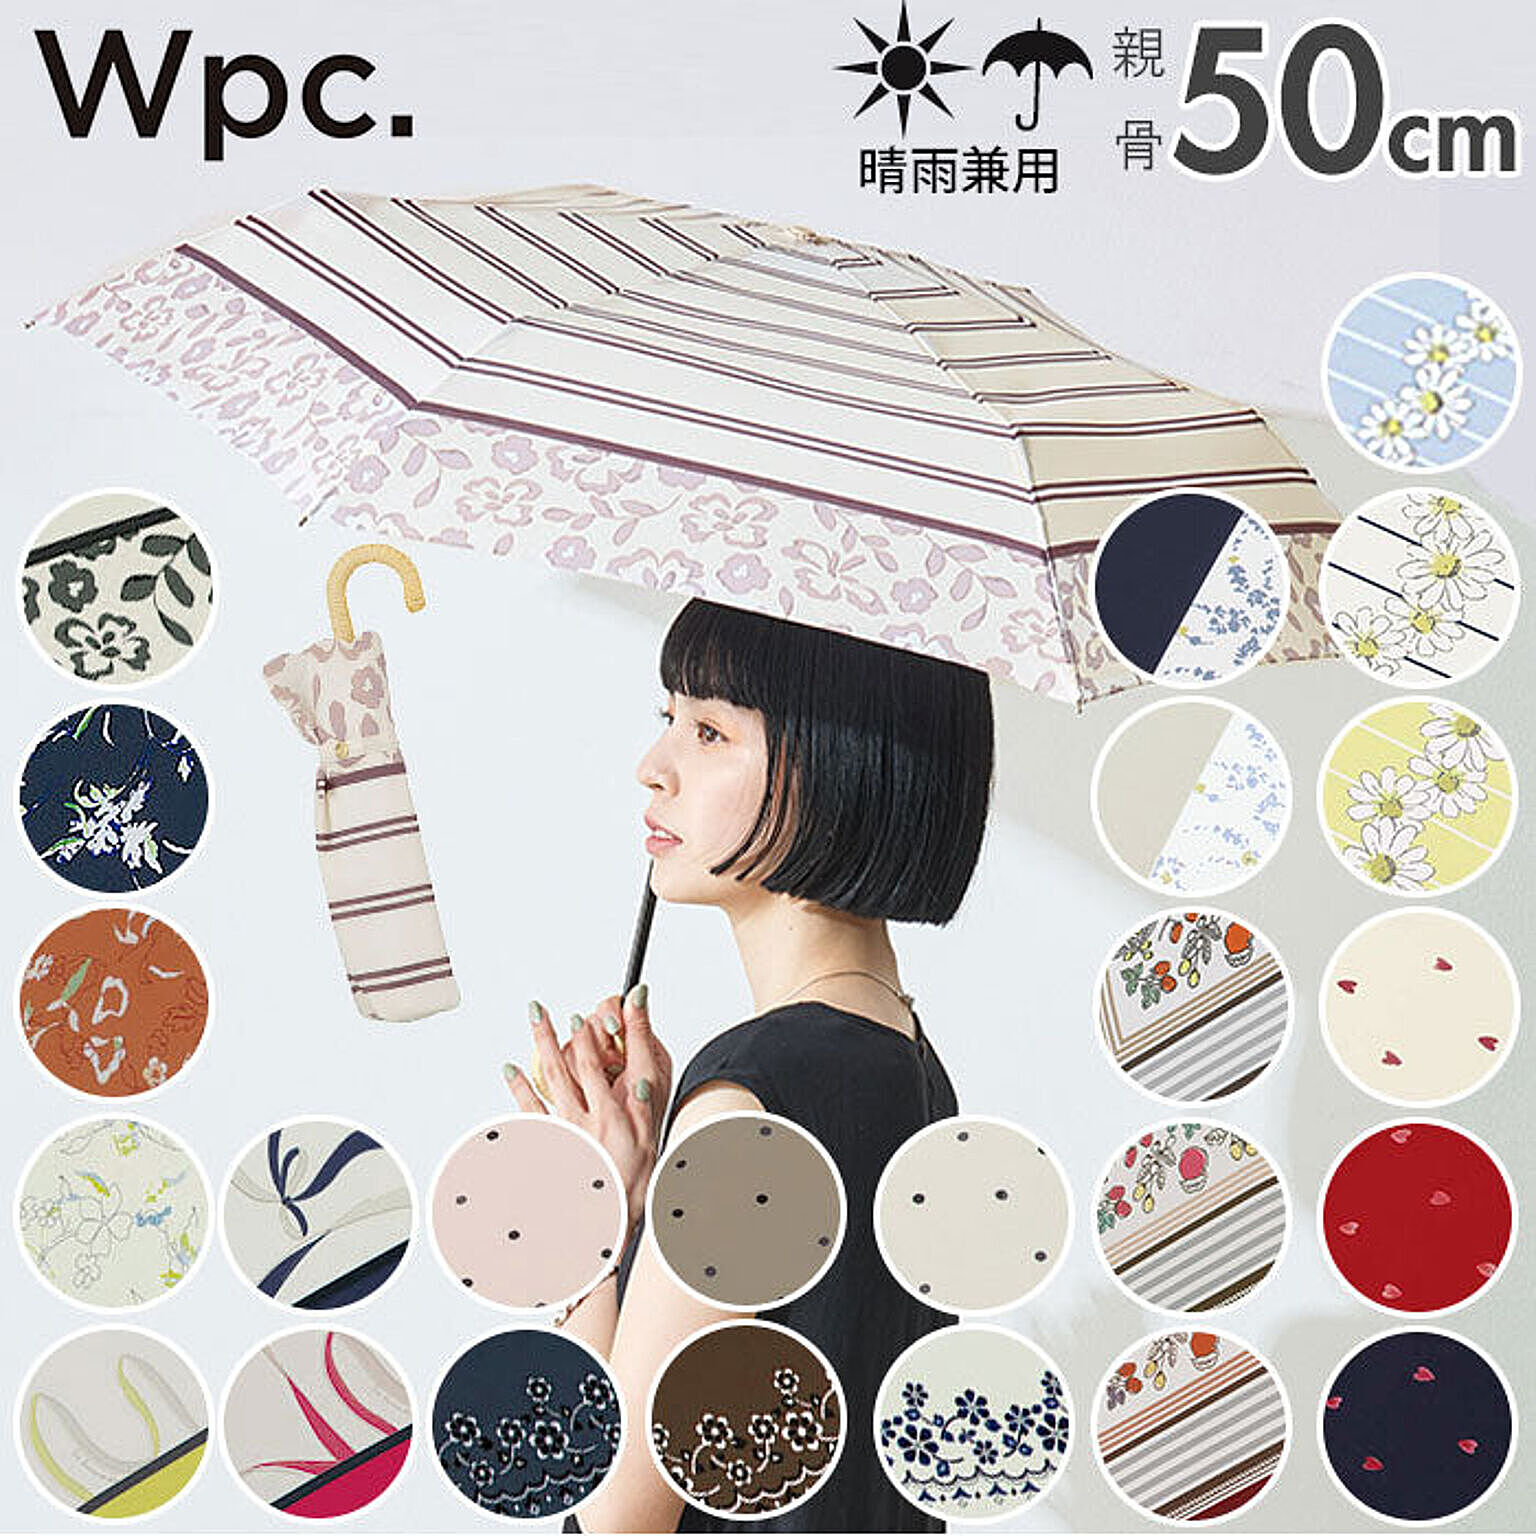 ワールドパーティー W by Wpc. 折りたたみ傘 50cm